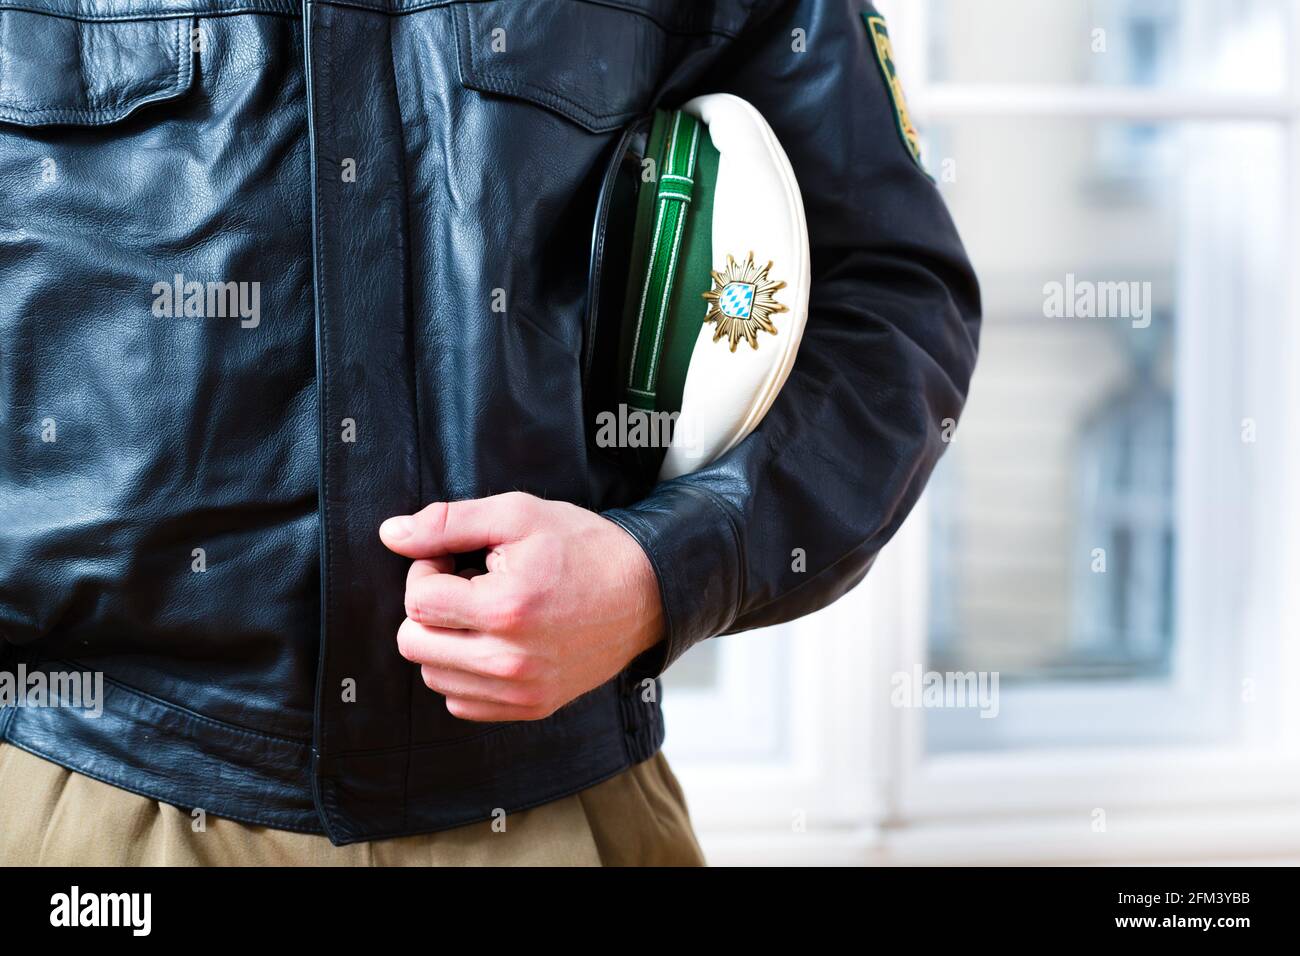 Polizist in Polizei-Station, in seiner Uniform mit Lederjacke und Hut, ist  er betriebsbereit Stockfotografie - Alamy